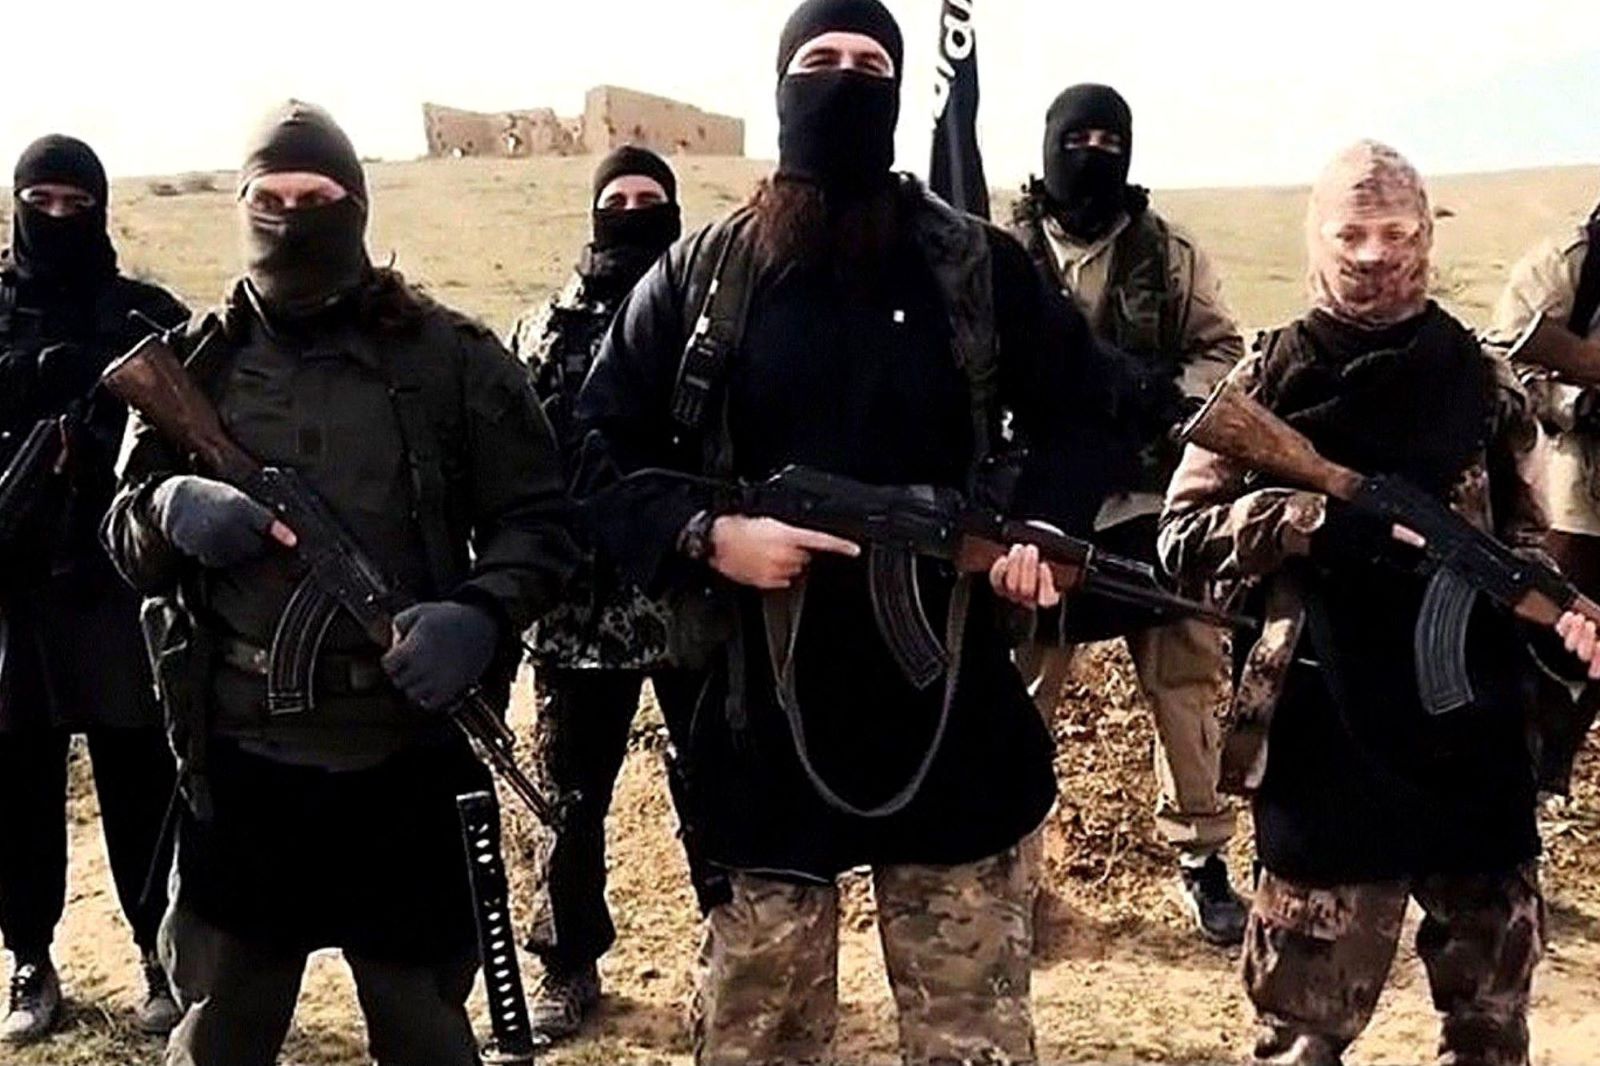 Συρία: Ο ISIS σκότωσε τουλάχιστον 15 φιλοκυβερνητικούς μαχητές σε επιθέσεις κατά στρατιωτικών θέσεων